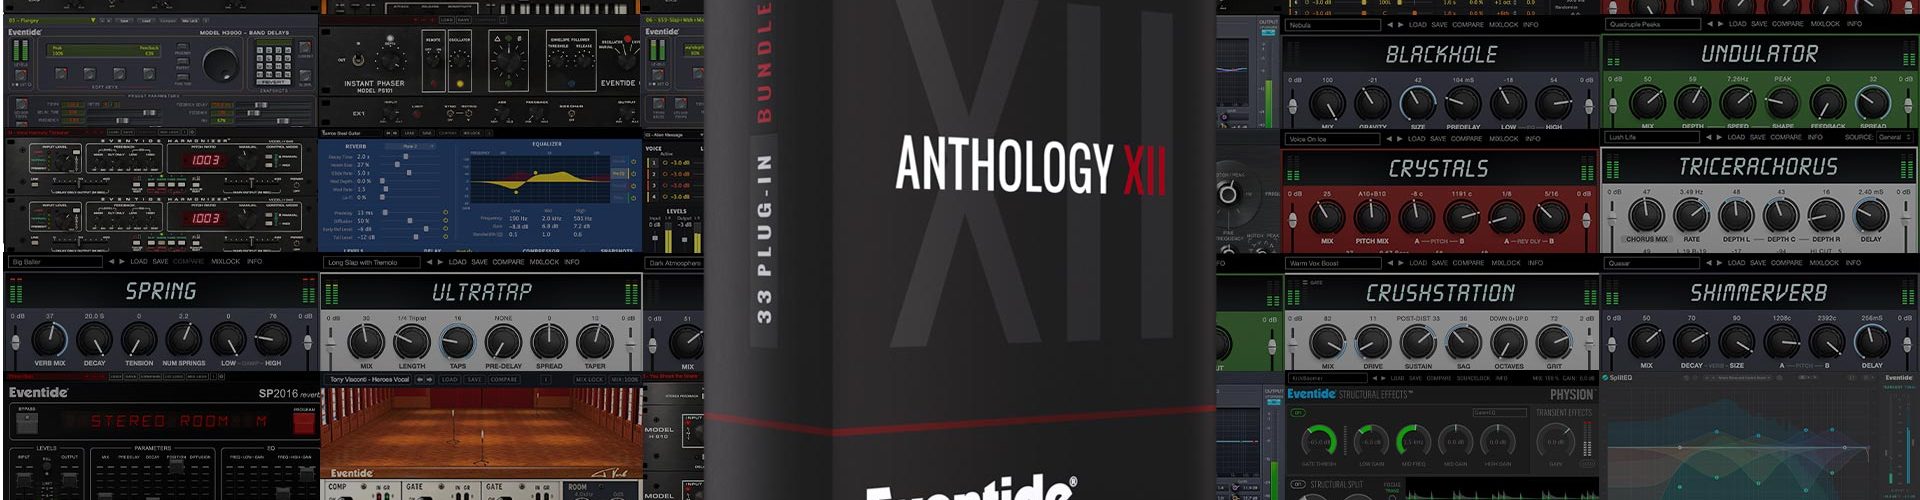 Eventide Anthology XII Bundle